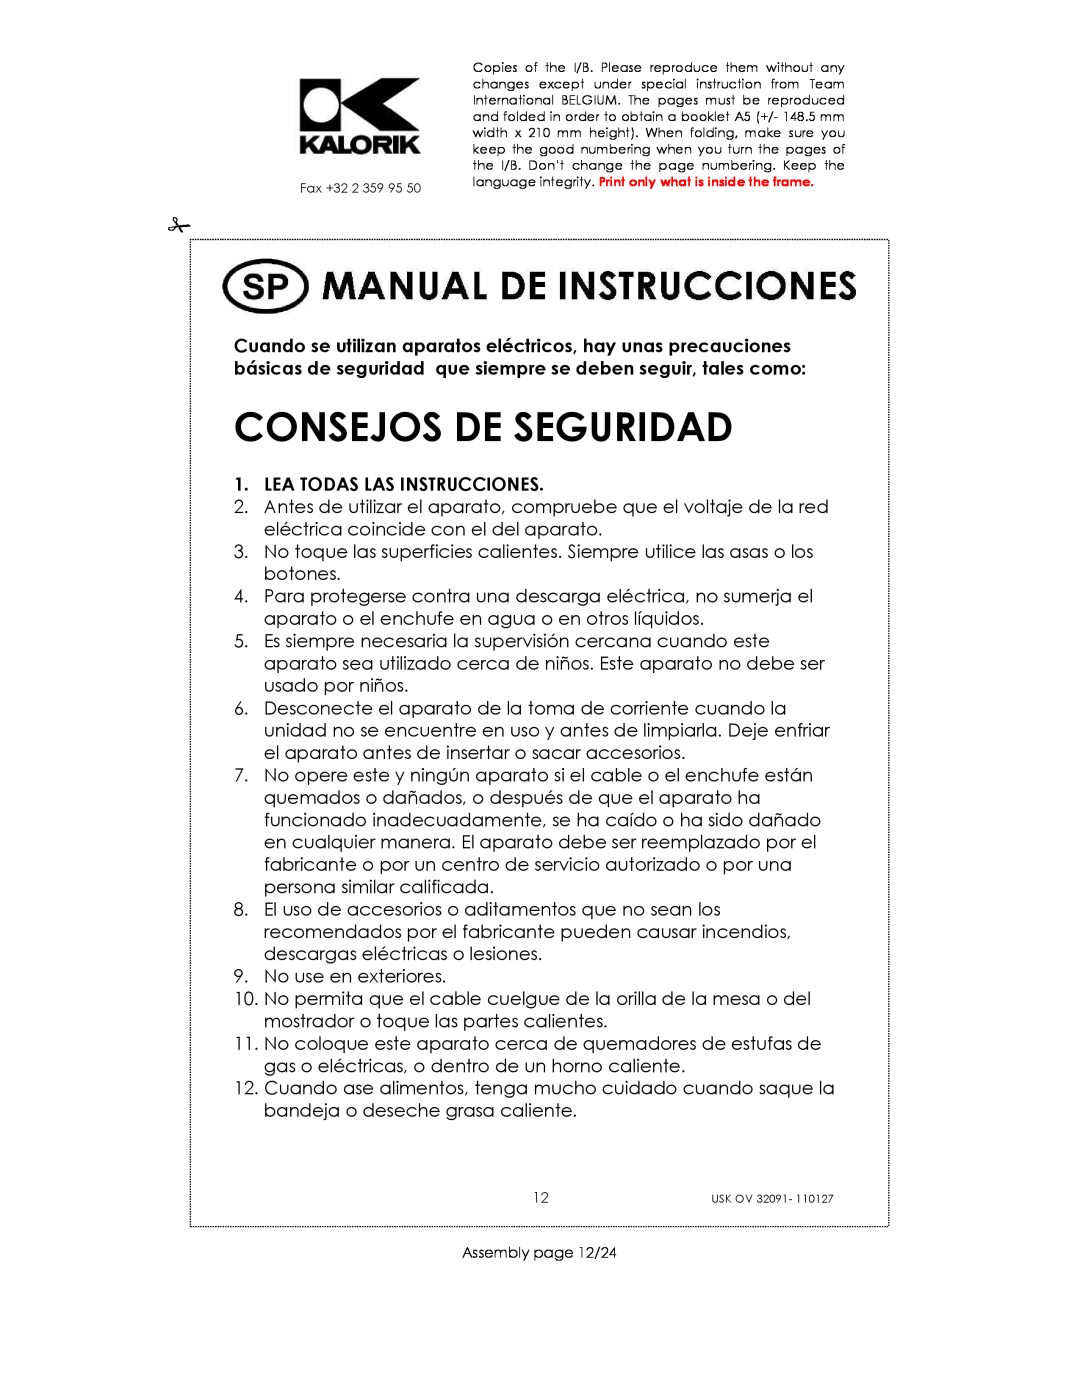 Kalorik USK OV 32091 manual Consejos De Seguridad, Lea Todas Las Instrucciones 